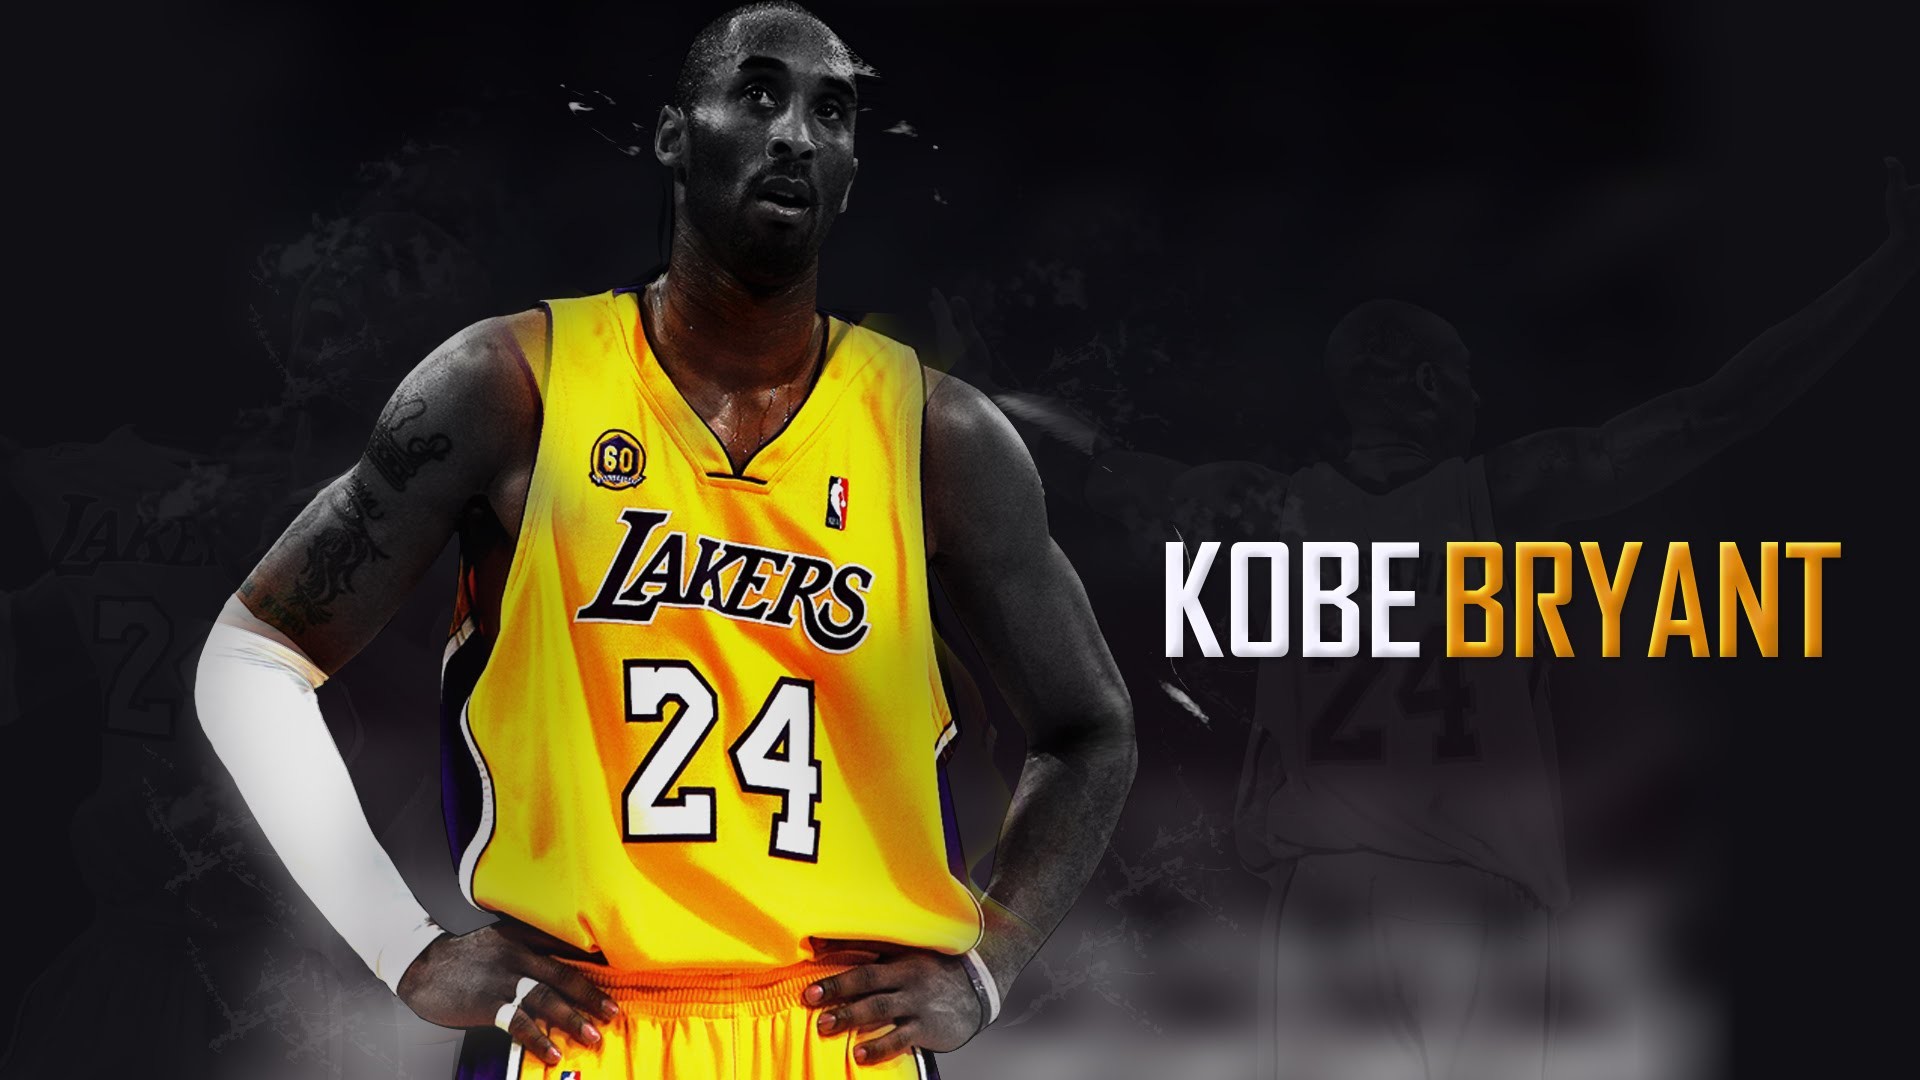 HD wallpaper: Kobe Bryant is the MVP, Kobe Bryant Los Angeles